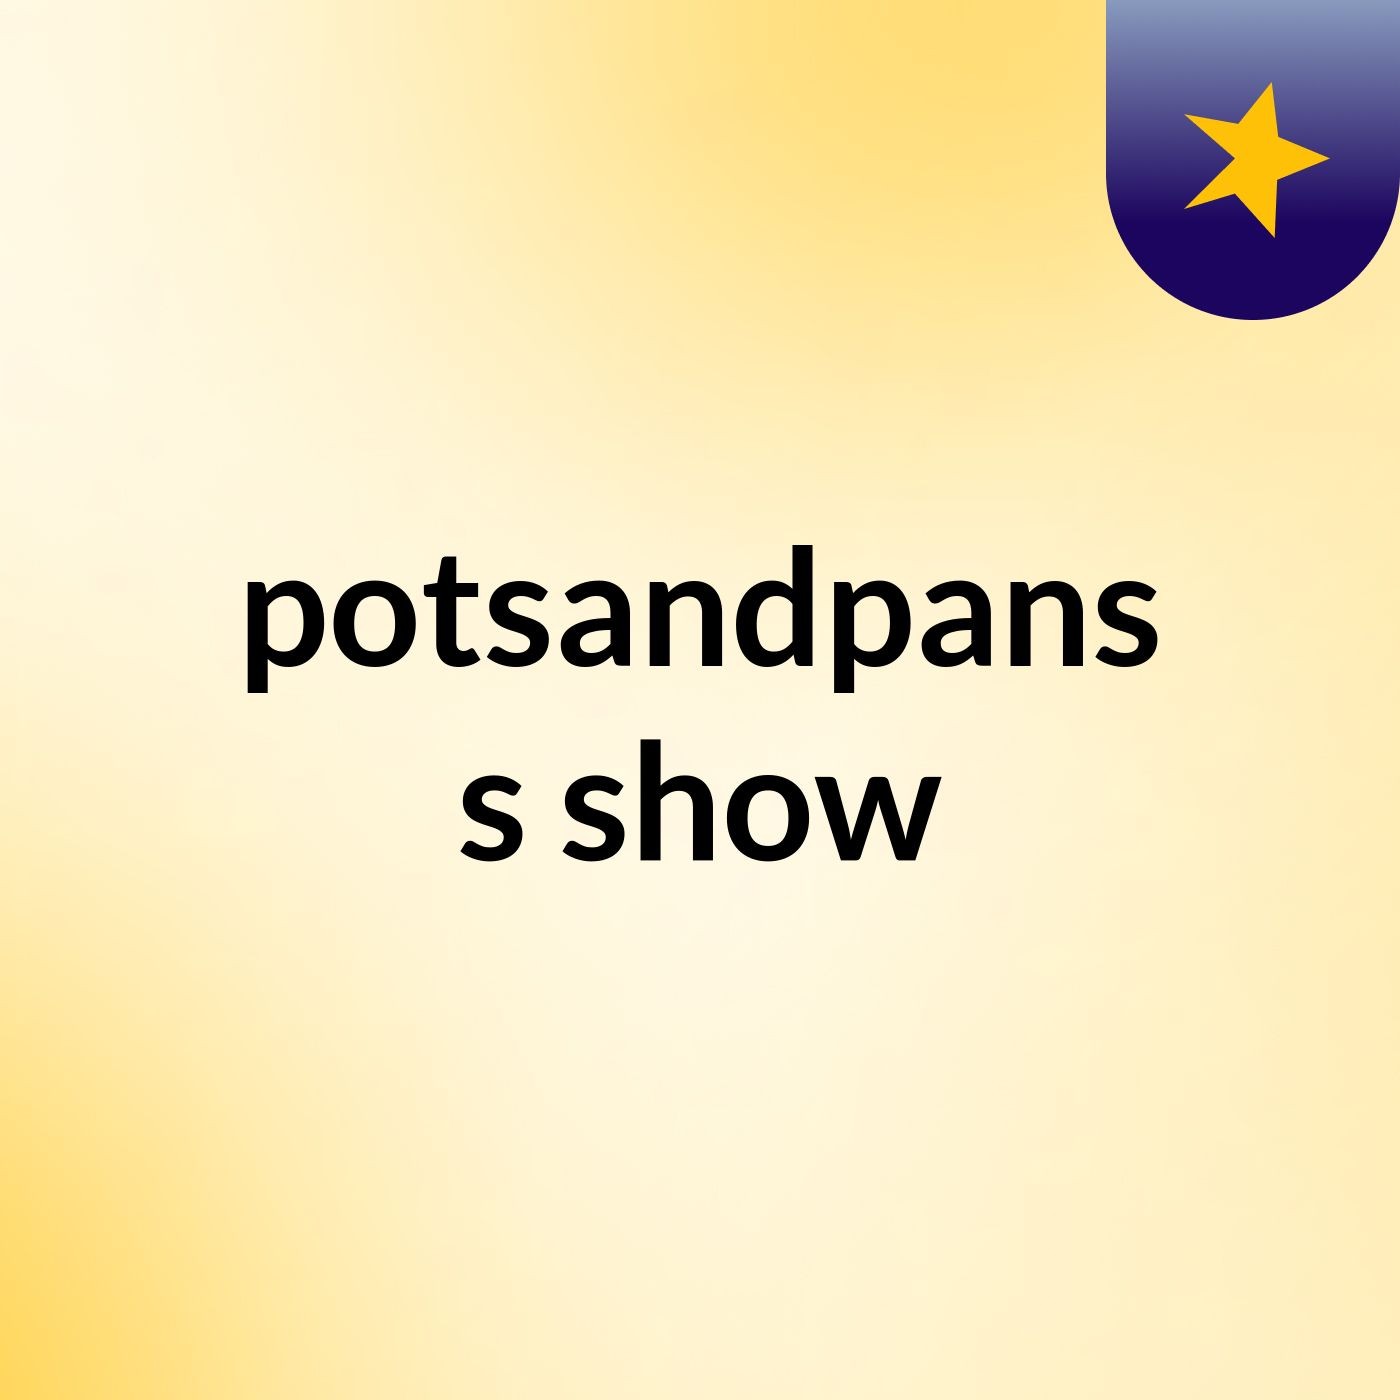 potsandpans's show